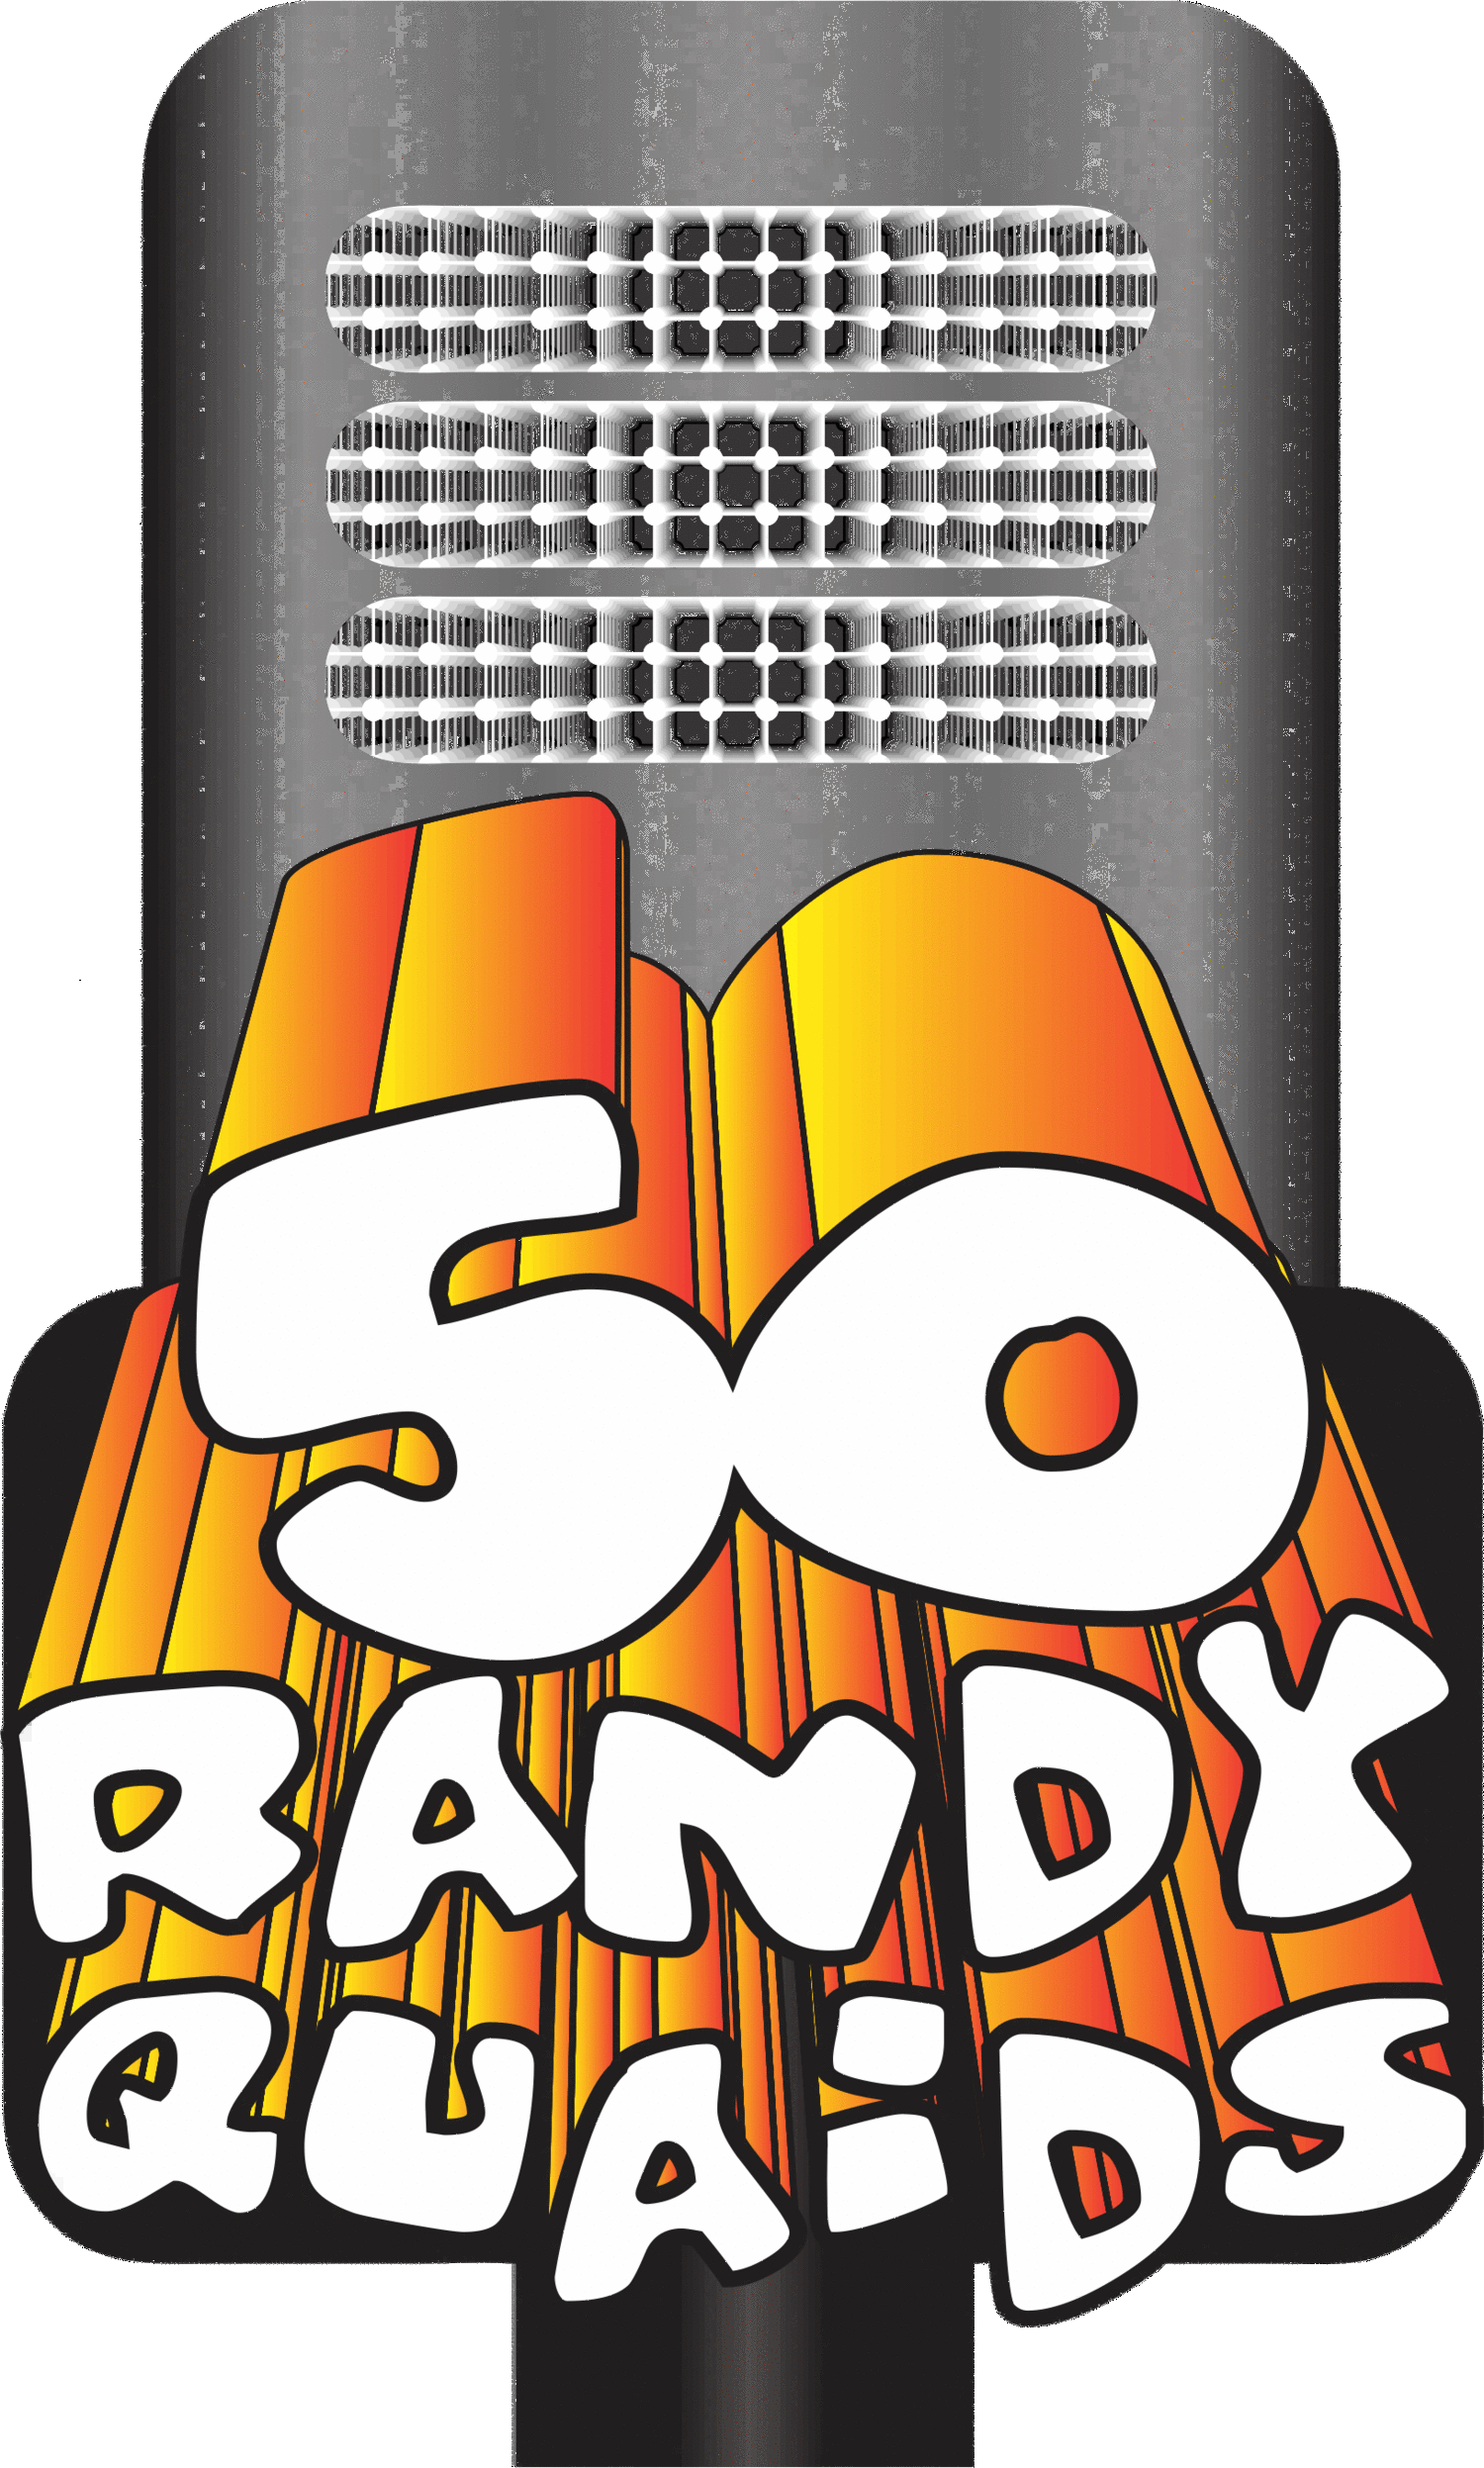 50RandyQuaids.com